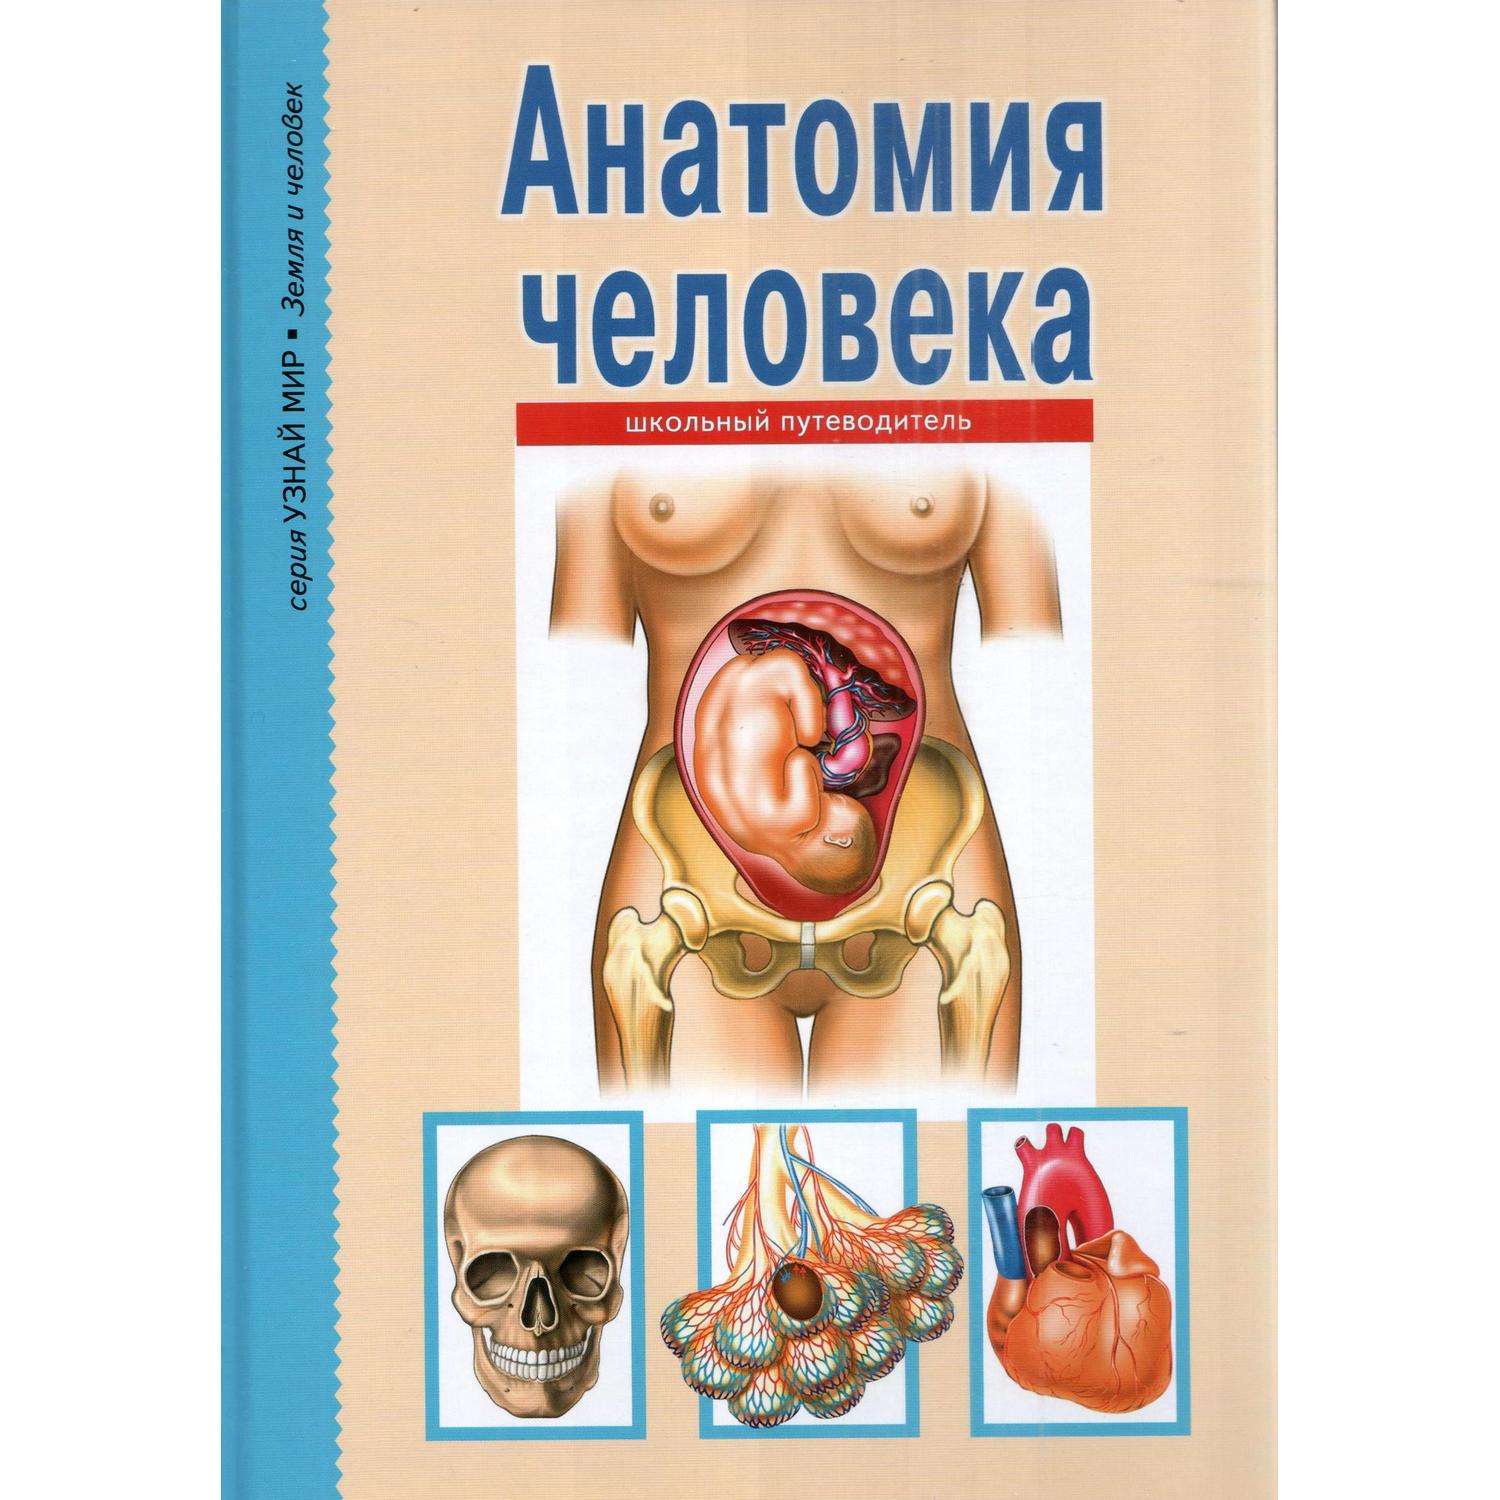 Книга Лада Анатомия человека Школьный путеводитель - фото 1